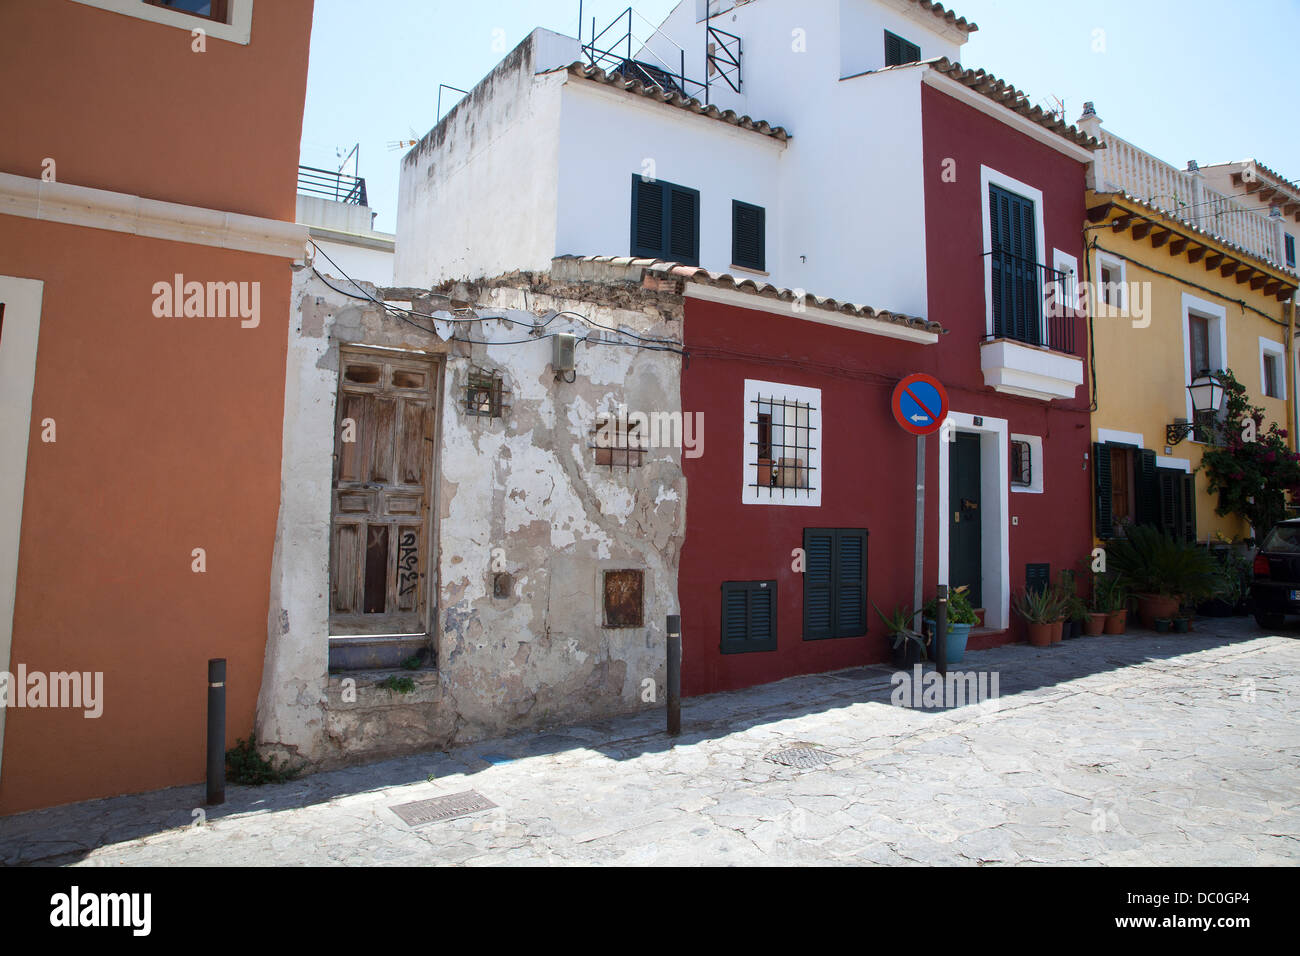 Traditional Terraced Houses on Plaza Vapor in Palma Majorca Stock Photo